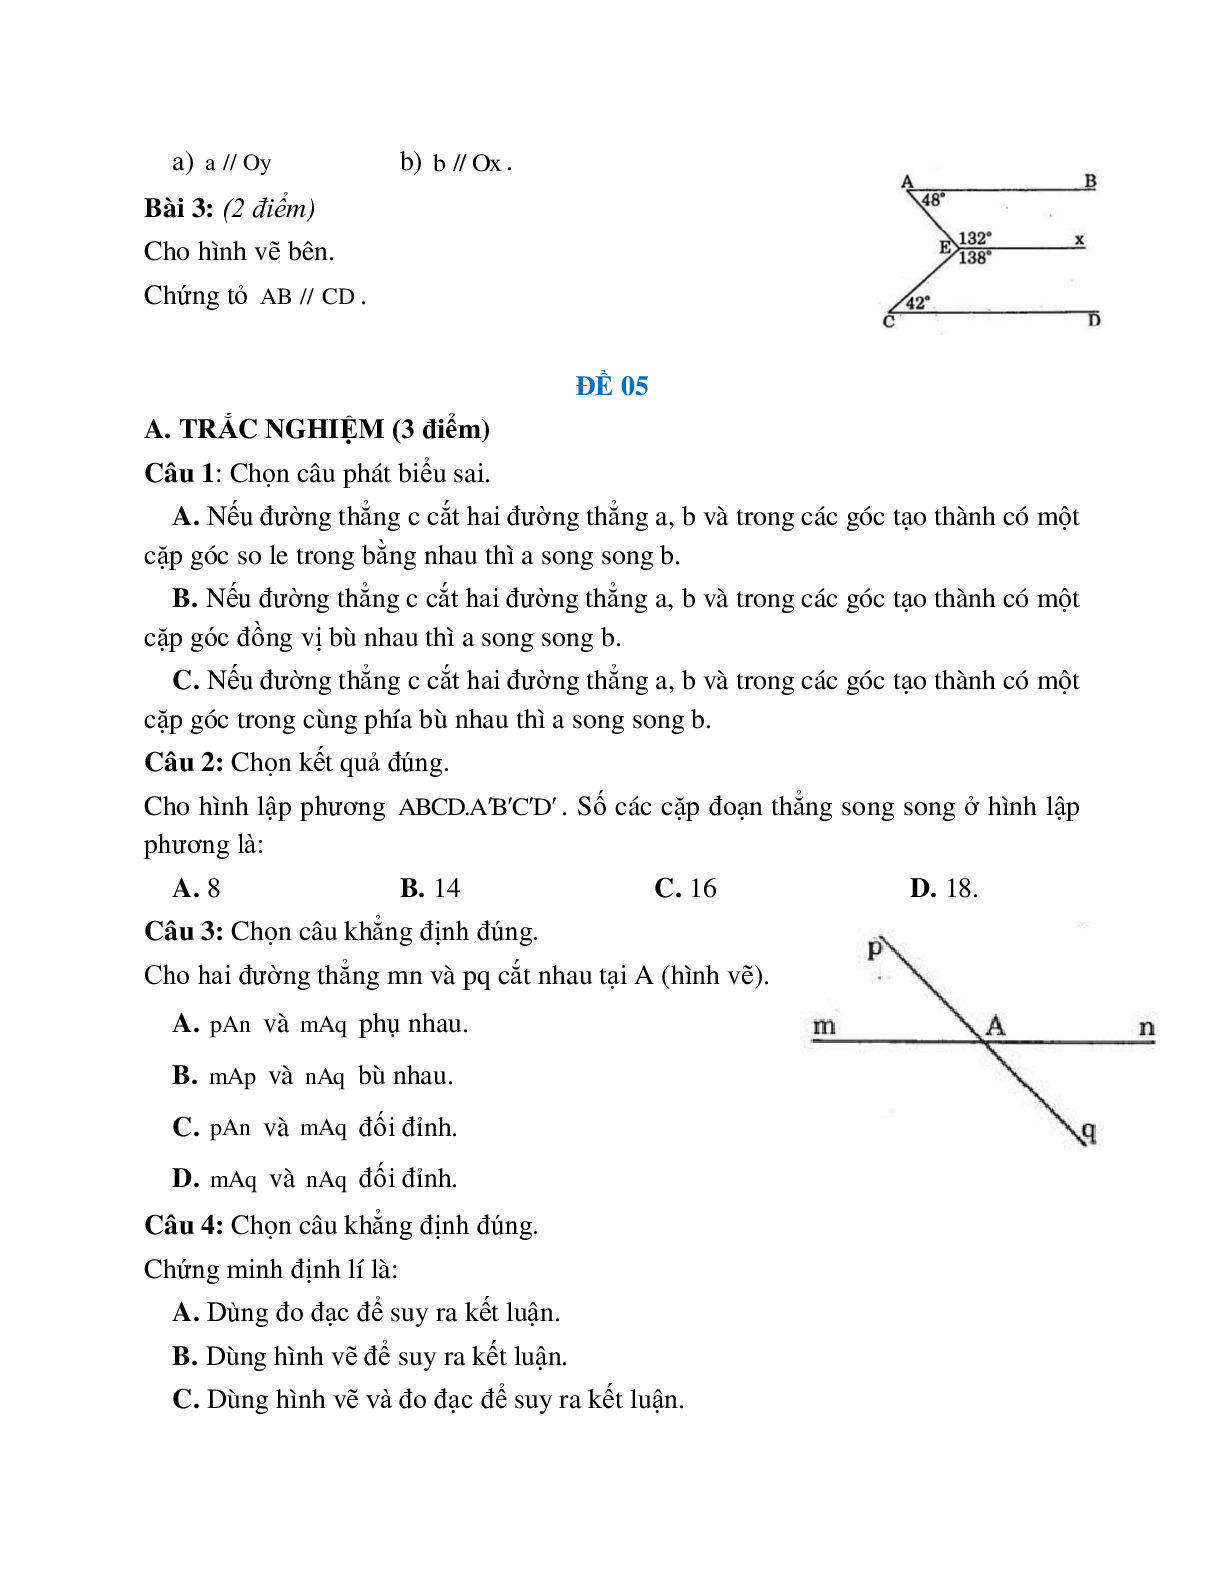 Đề ôn tập đường thẳng vuông góc, đường thẳng song song (5 đề) (trang 6)